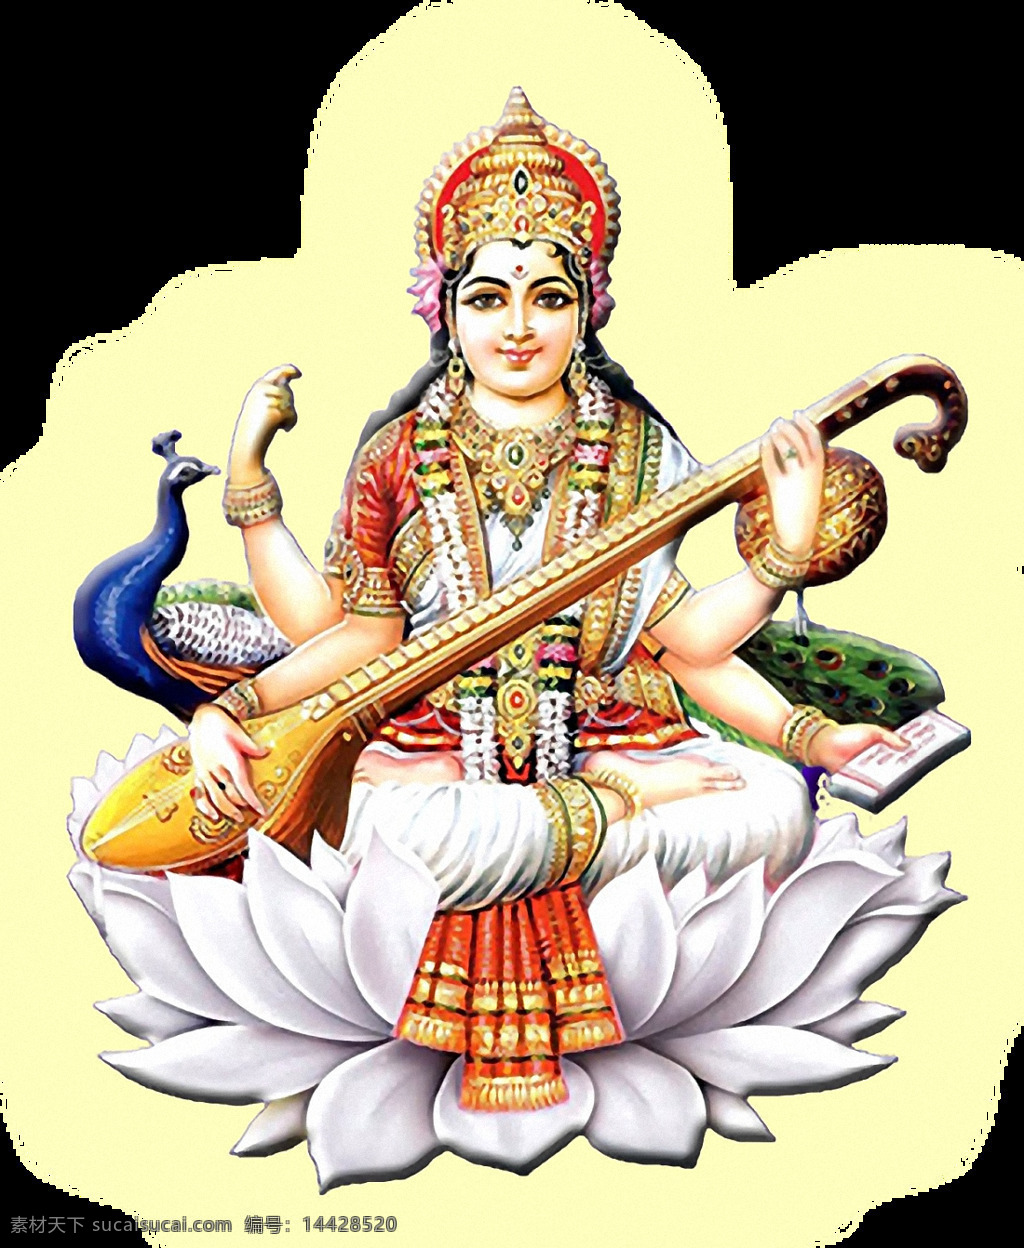 印度教 萨 茹 阿斯 瓦 蒂 女神 免 抠 透明 妙音 天女 印度女神 印度教女神 印度神话人物 妙音天女图 妙音天女像